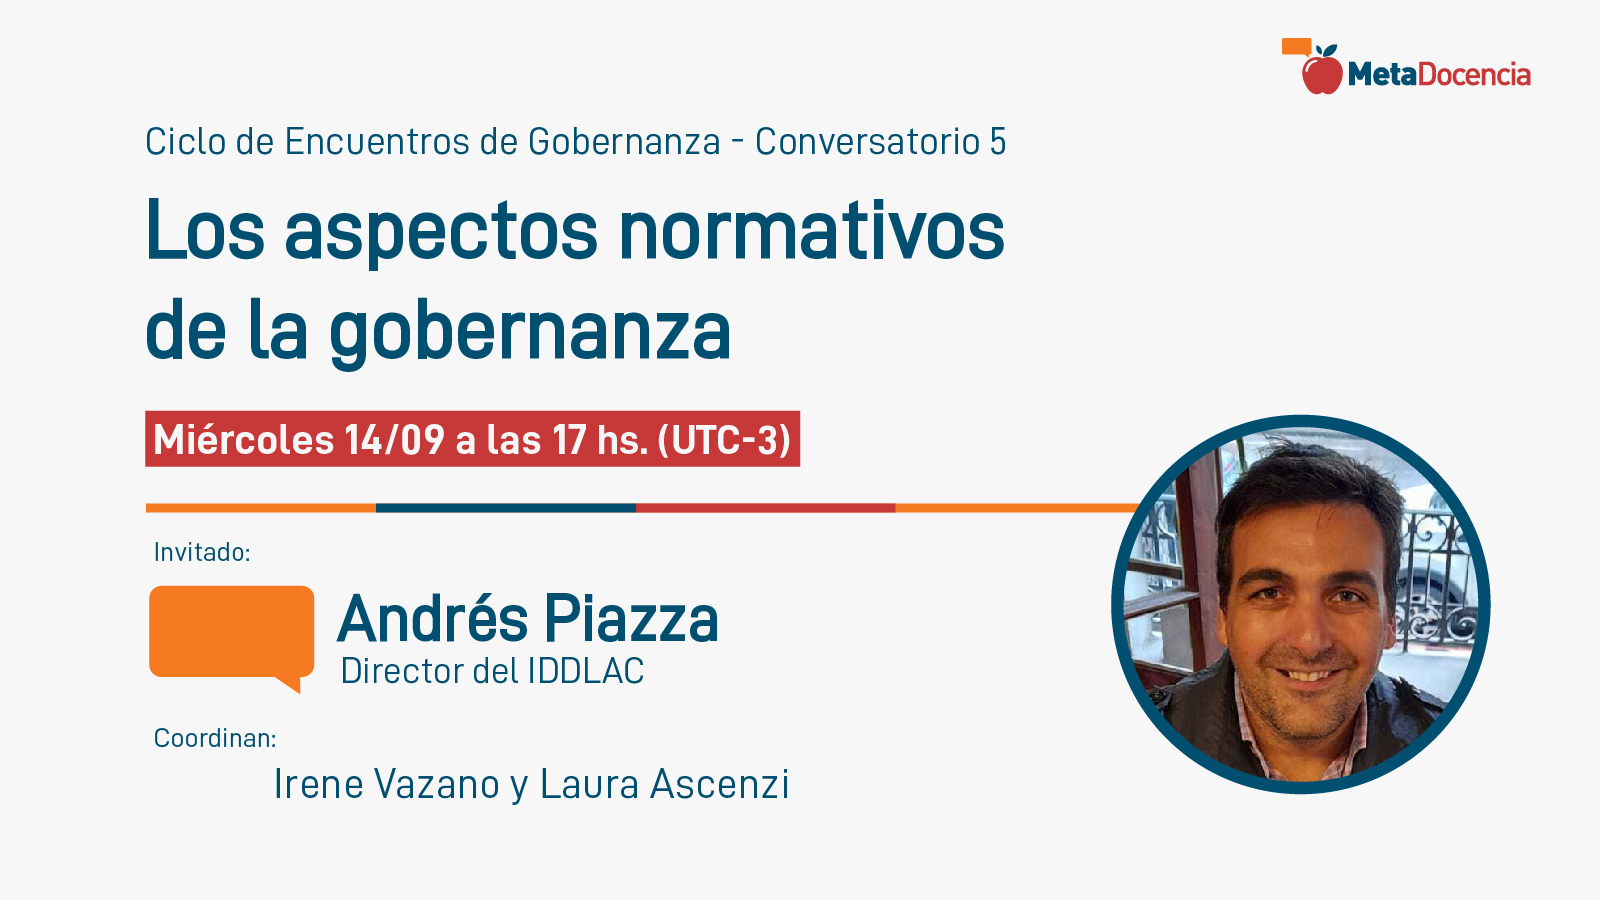 Ciclo de Encuentros de Gobernanza, Conversatorio 5. Andrés Piazza - Los aspectos normativos de la gobernanza. Miércoles 14/09 a las 17 hs. (UTC-3)